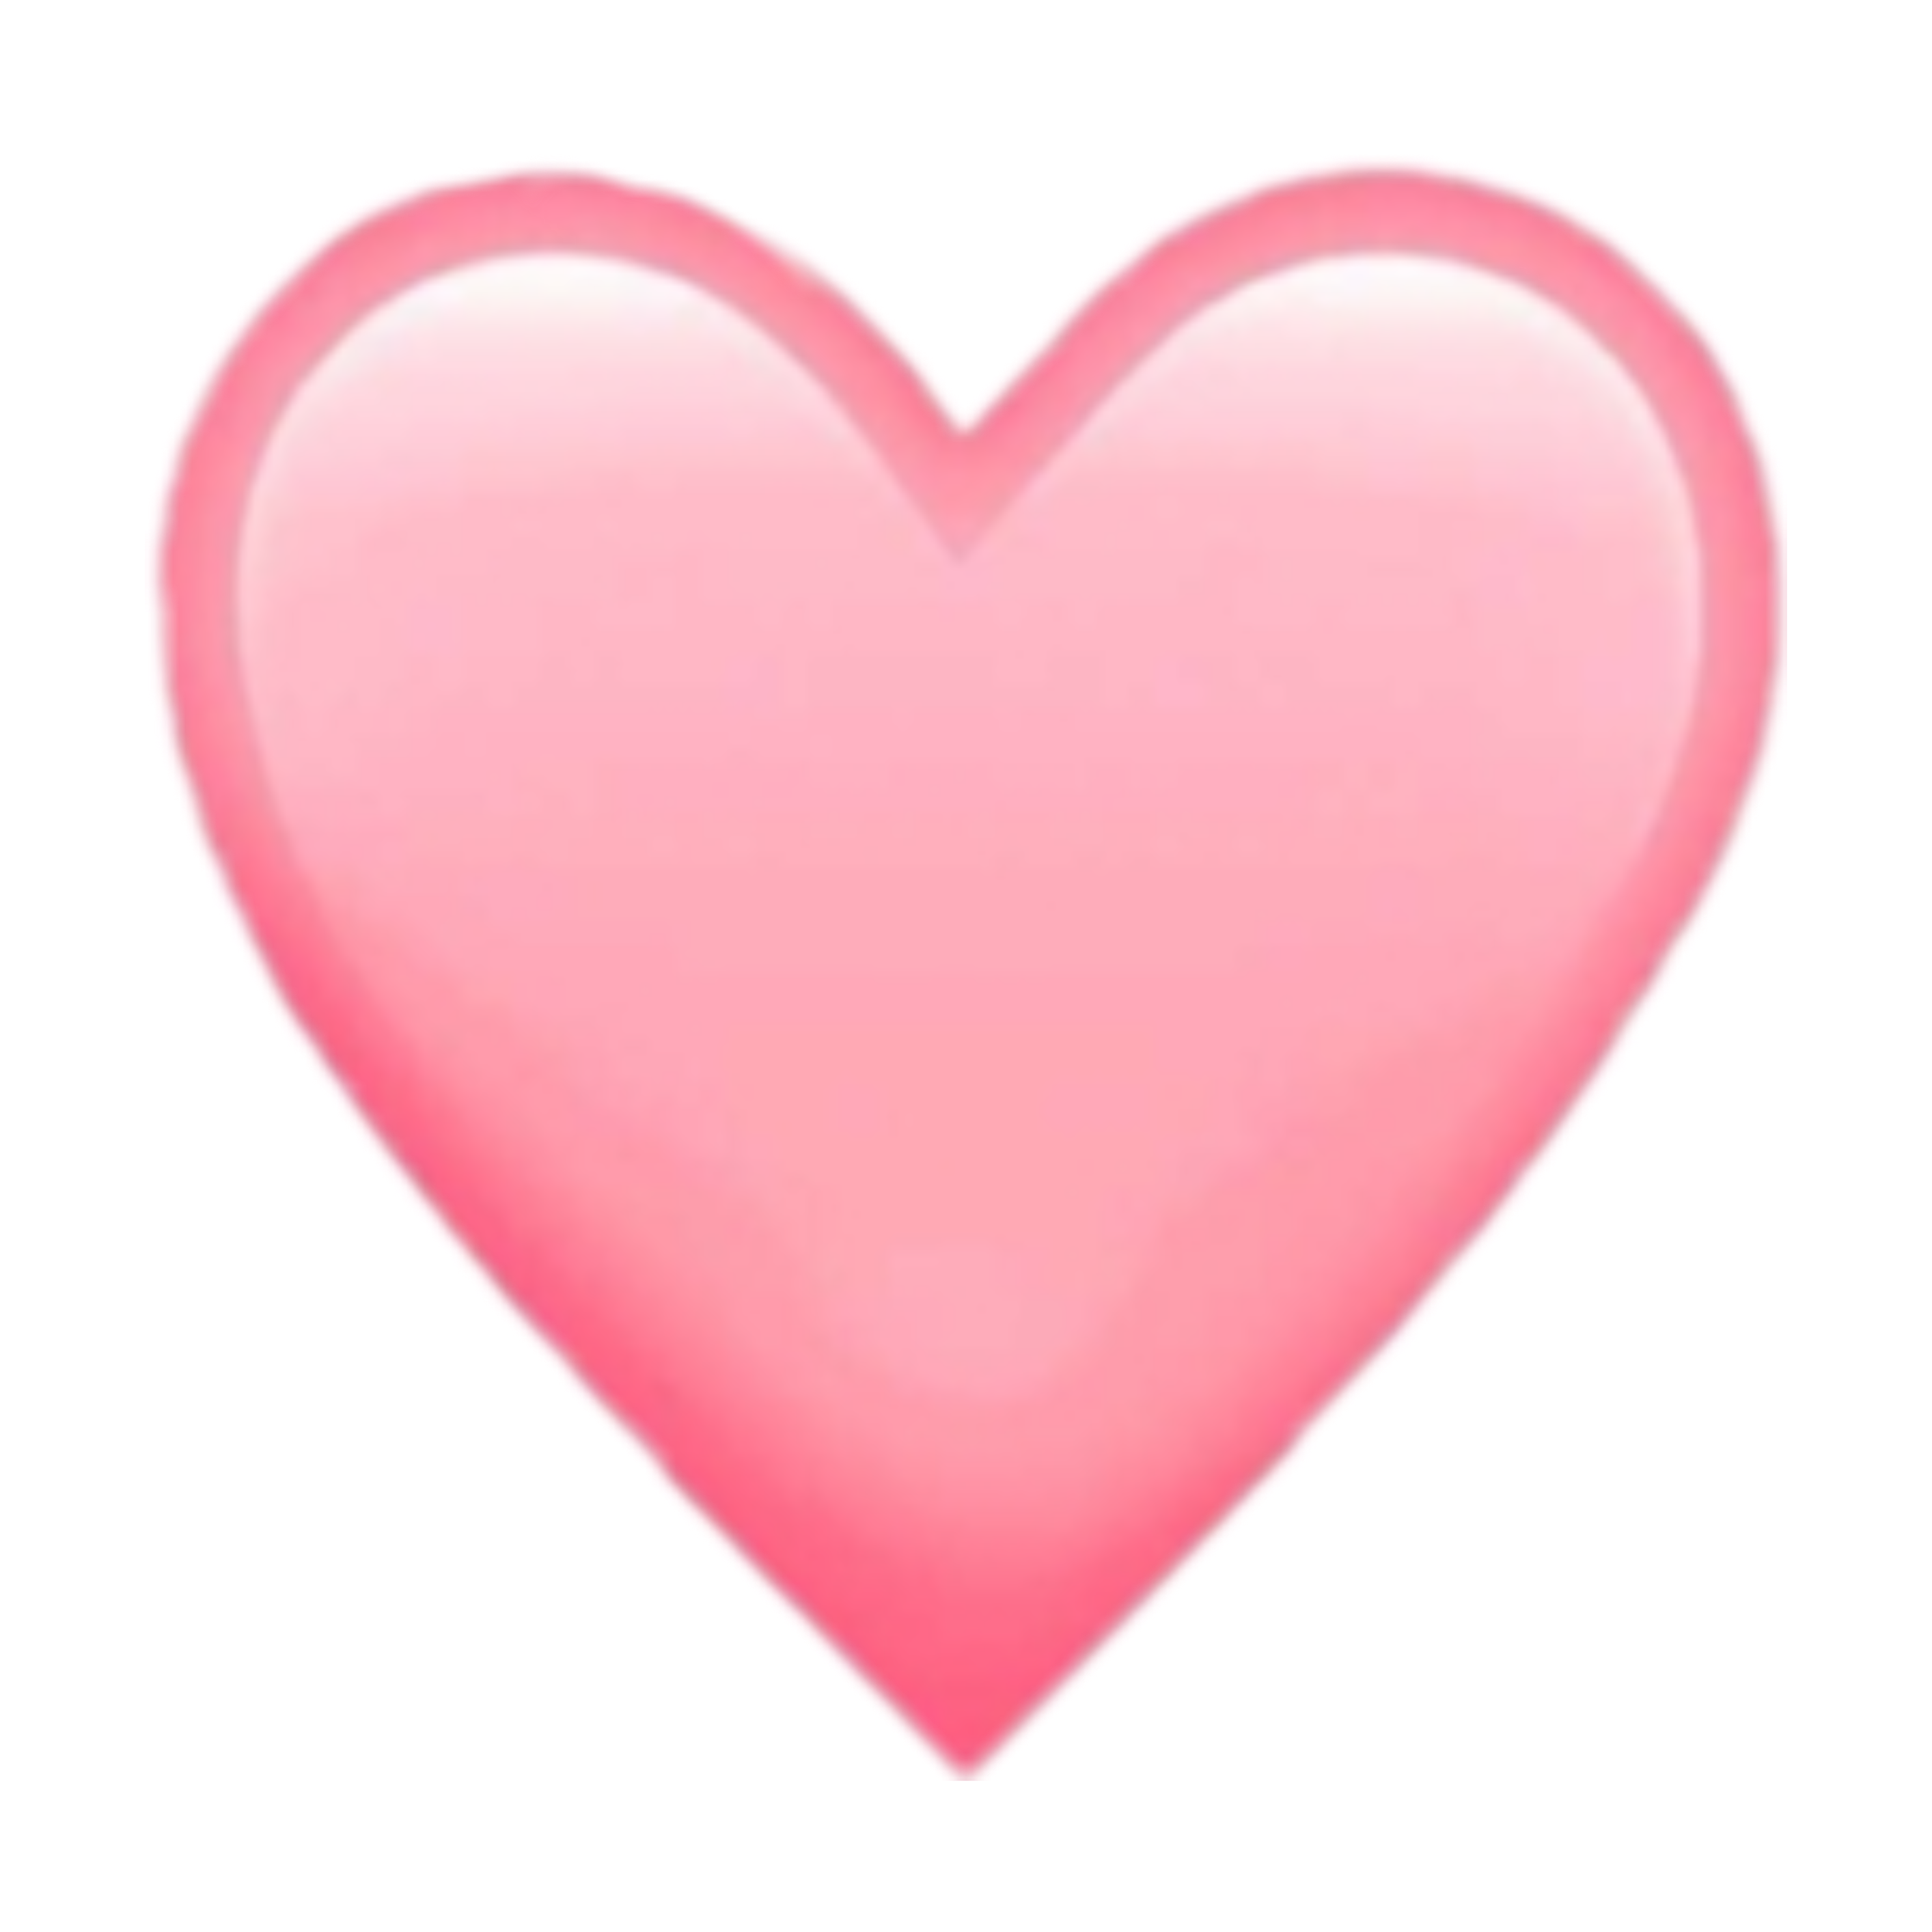 emoji emojis tumblr instagram insta aesthetic mood cute... - Instagram Heart Emoji